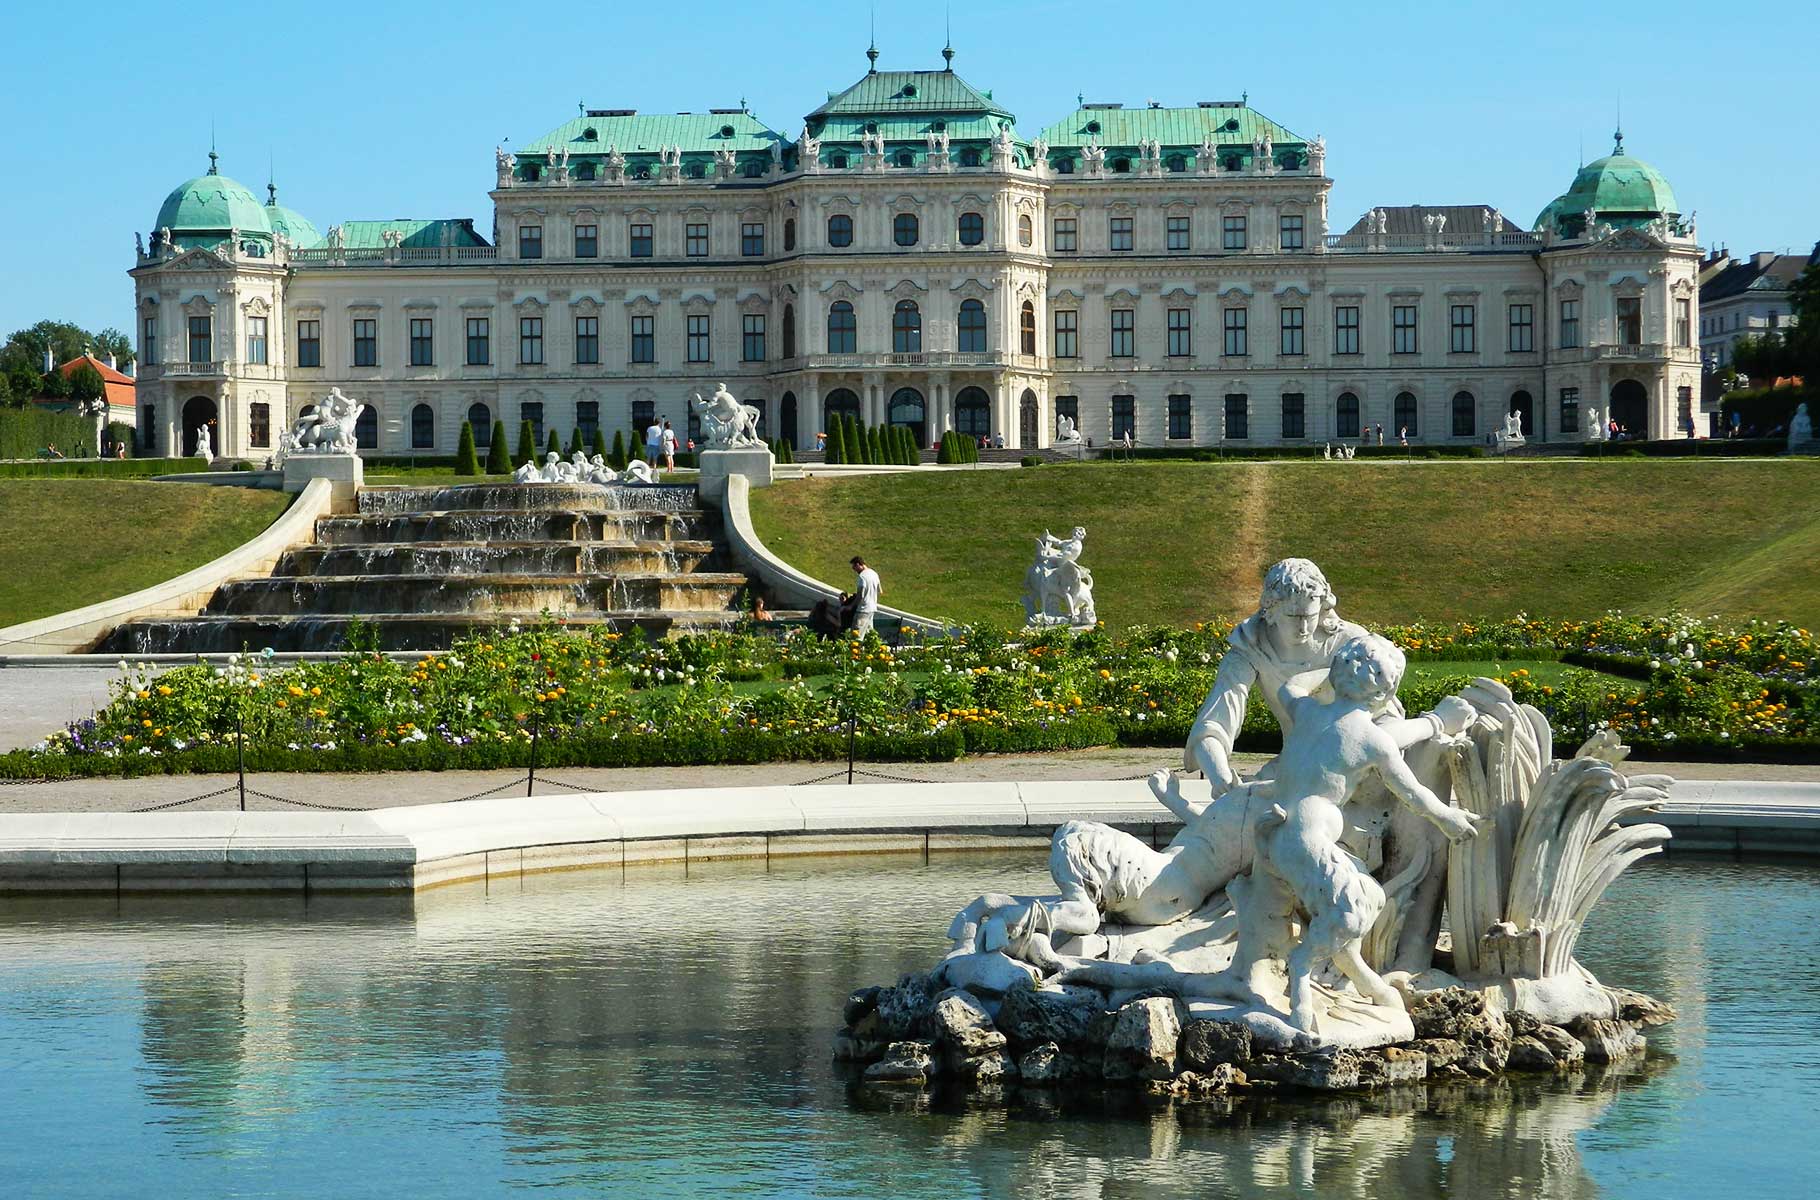 Viena, na Áustria, é eleita melhor cidade do mundo para se viver segundo ranking da Economist